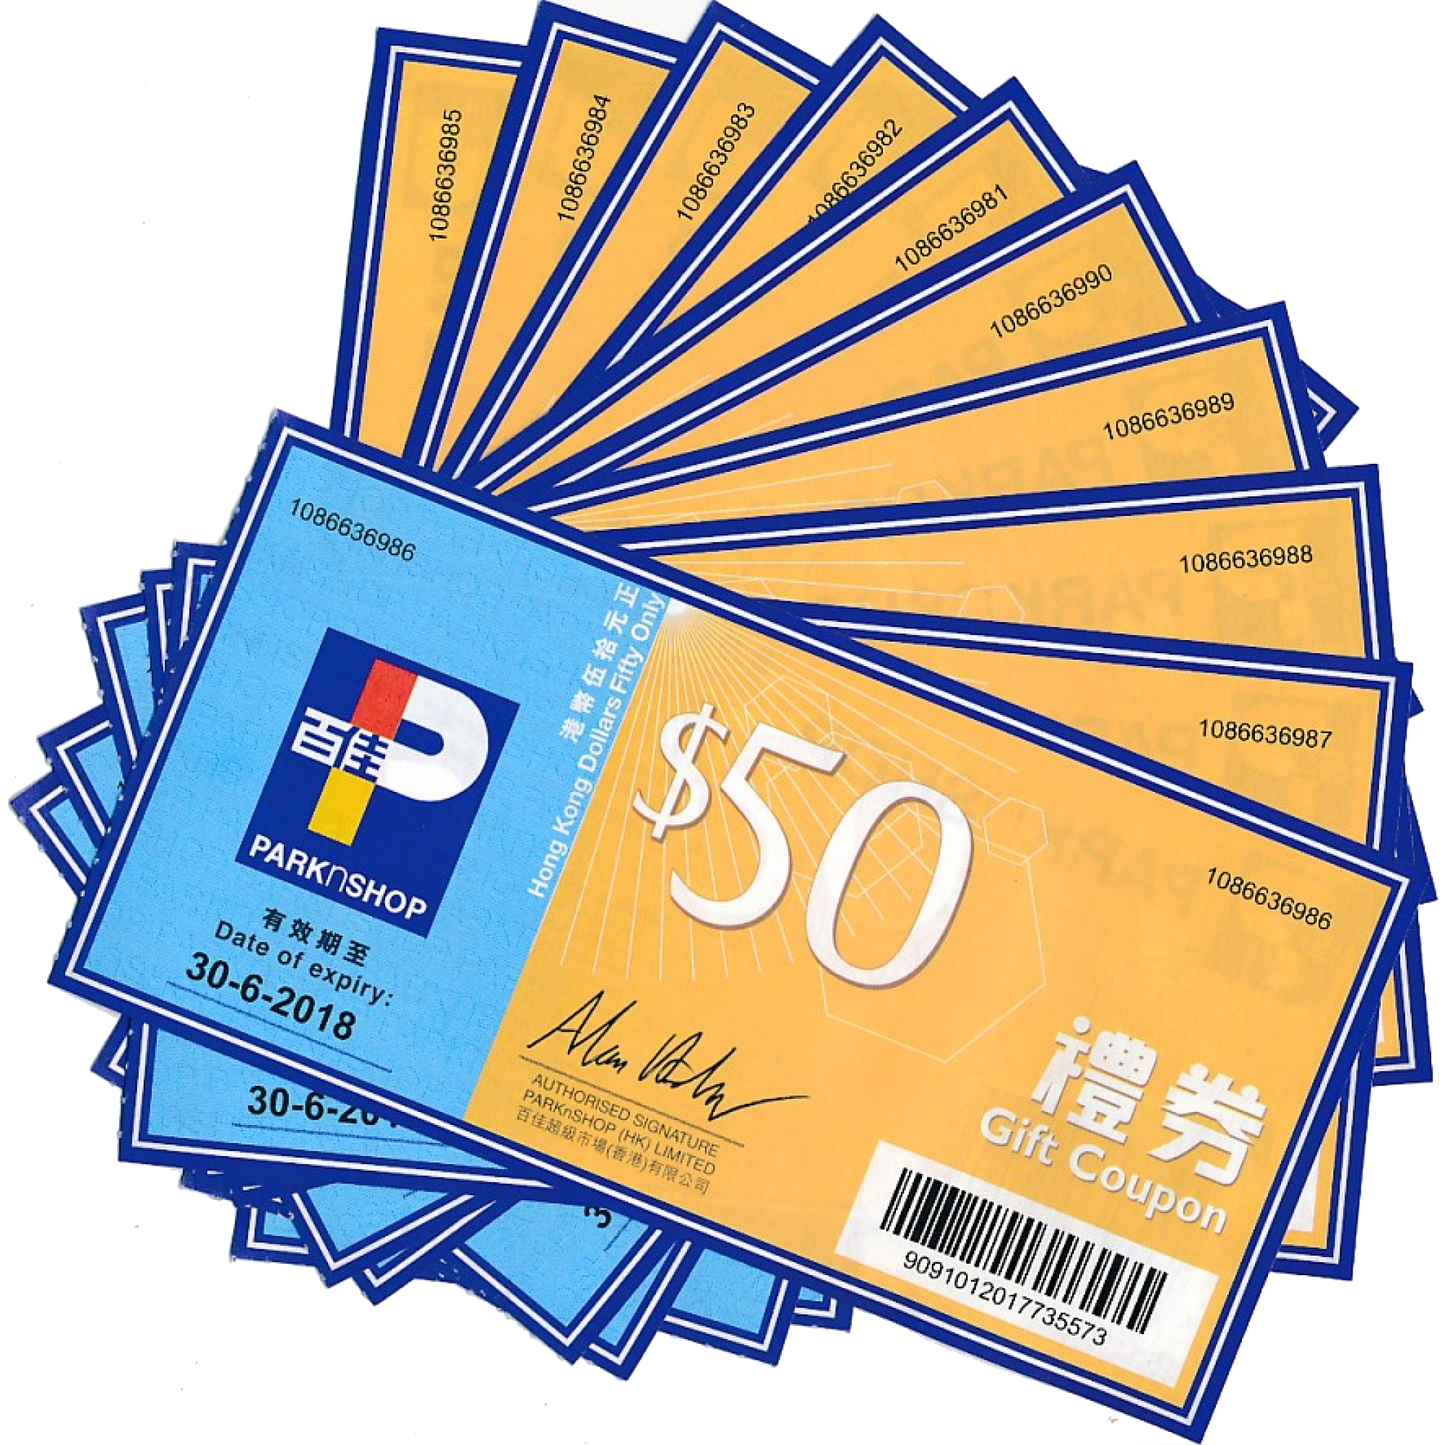 【快】微訊支付WeChatPay限定 - TTC基本身體檢查套餐$1999 送電子禮券高達價值$900